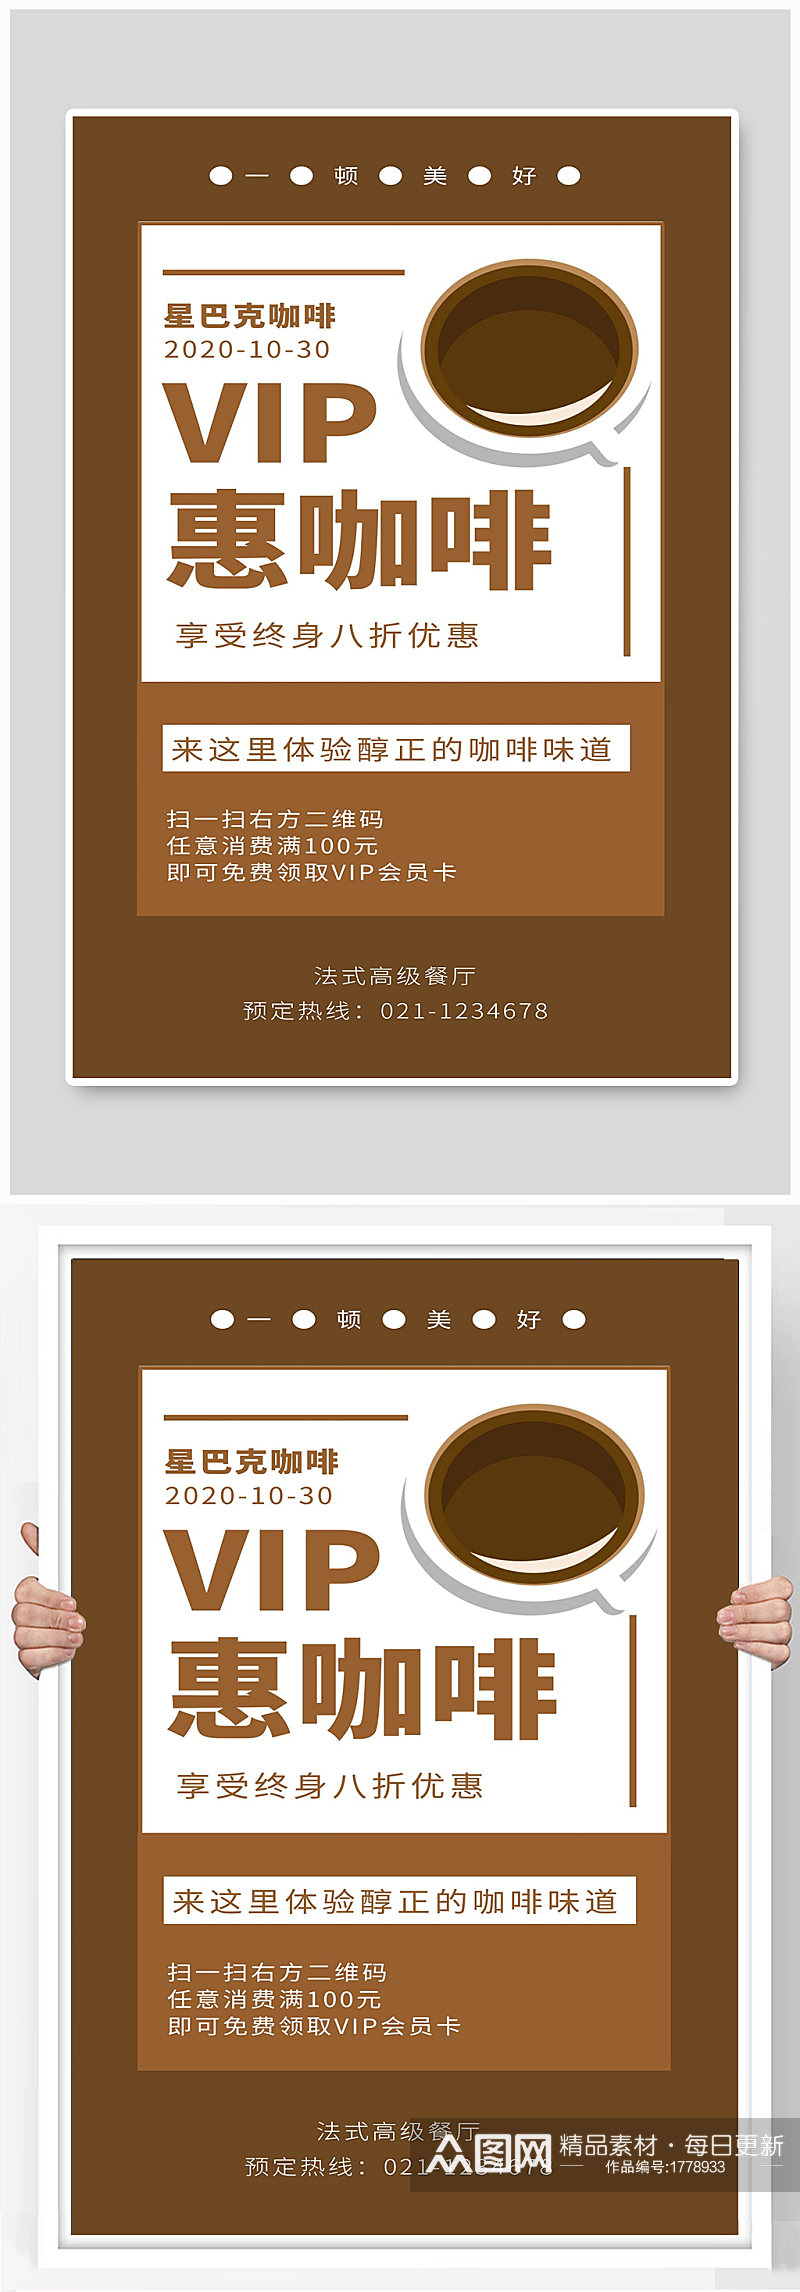 咖啡宣传海报设计制作素材